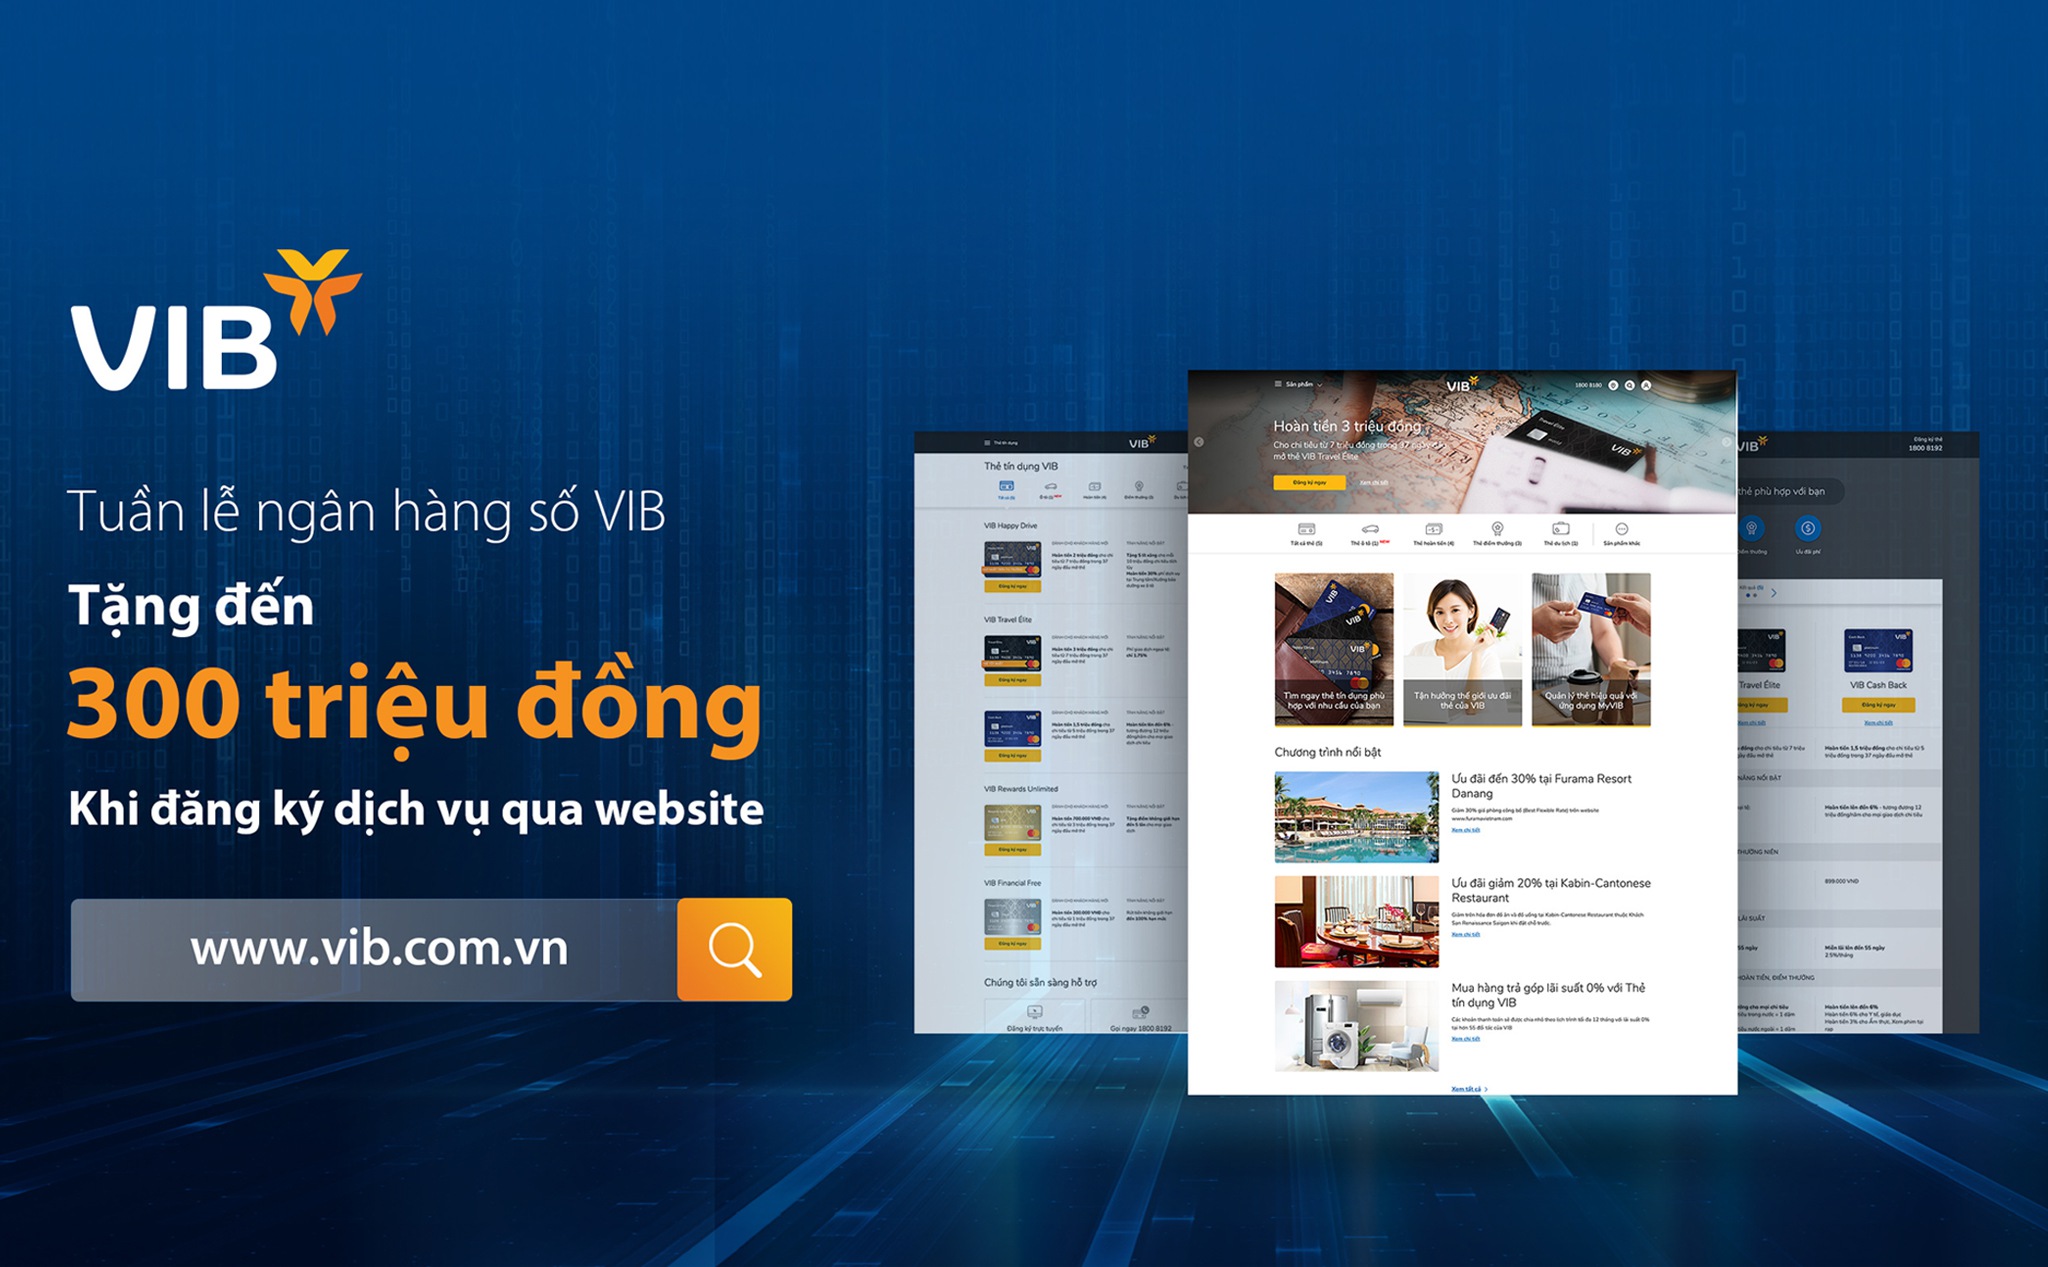 [QC] Tuần lễ ngân hàng số VIB: Tặng đến 300 triệu đồng cho khách hàng đăng ký sản phẩm qua website